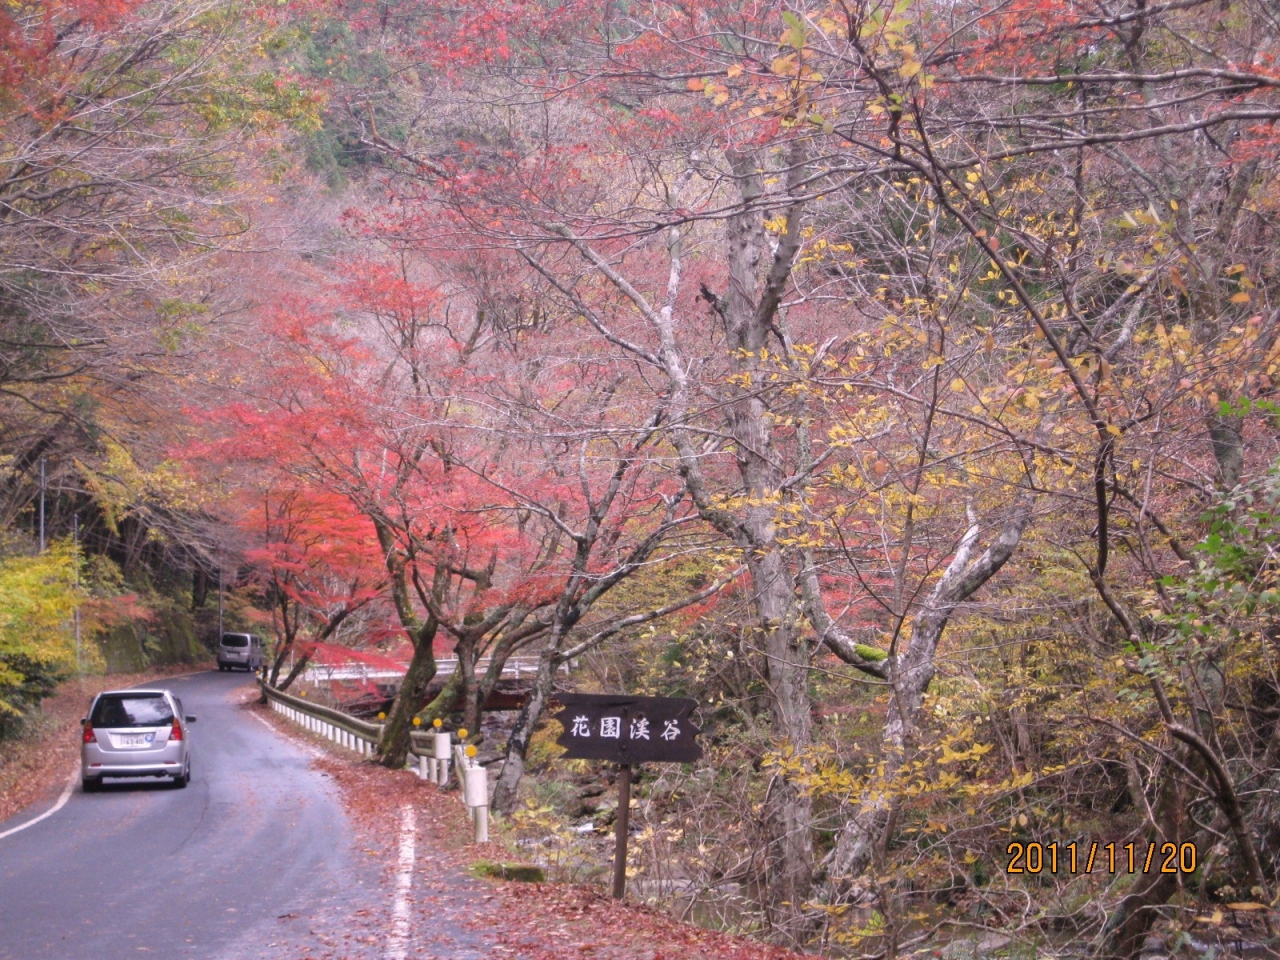 北茨城の紅葉を求めて 色づいた花園渓谷を楽しむ一日 北茨城 磯原 茨城県 の旅行記 ブログ By ちょびれさん フォートラベル